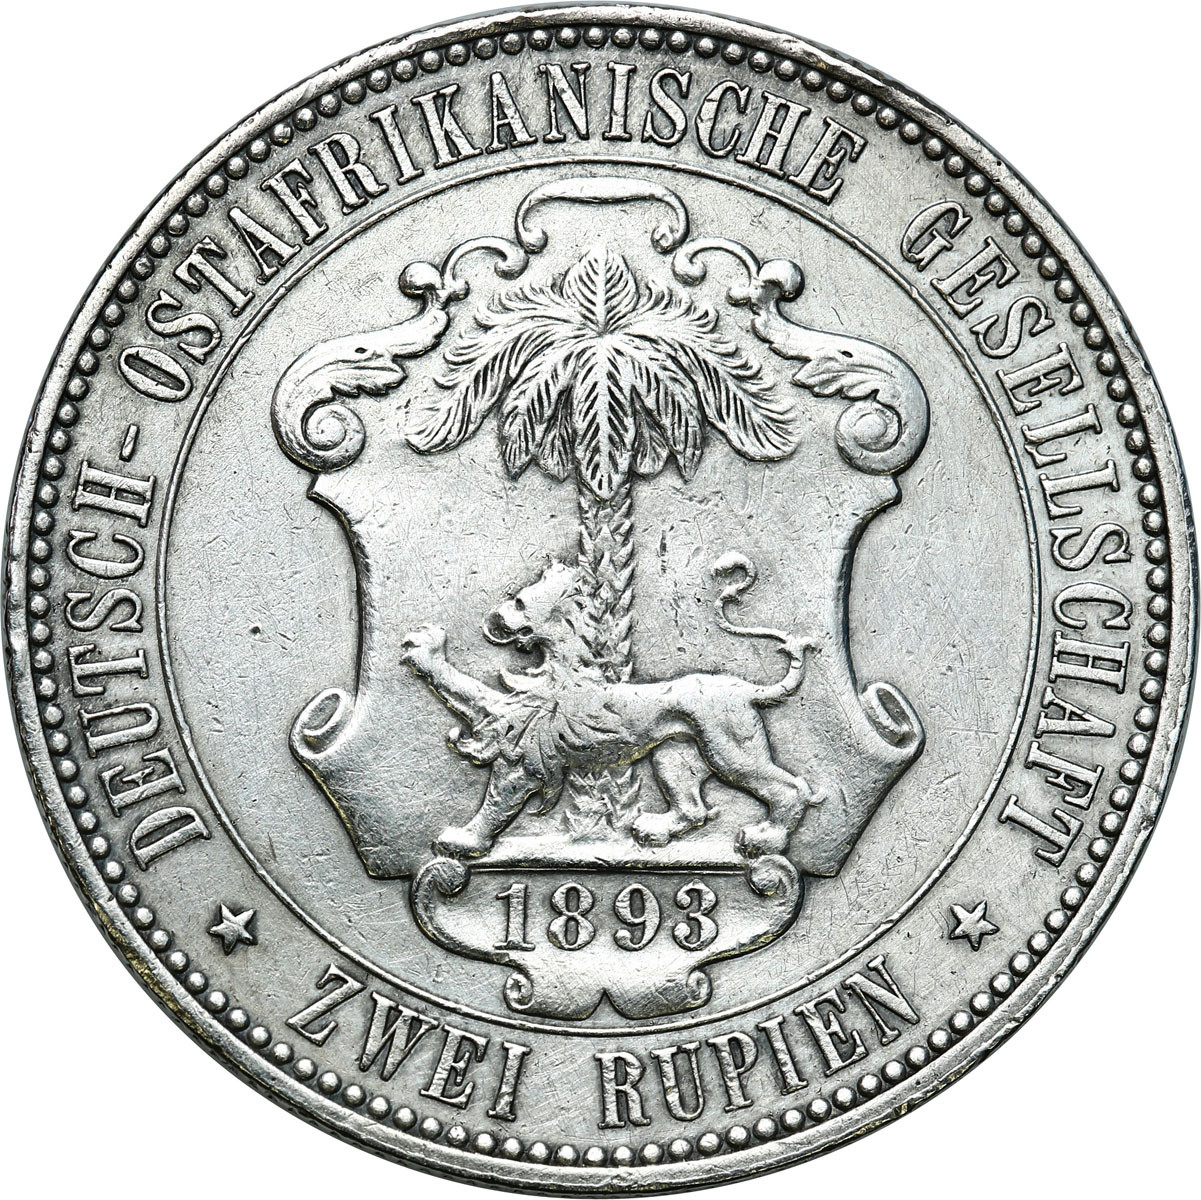 Niemcy, Afryka wschodnia. Wilhelm II (1888-1918). 2 rupie 1893 - RZADKIE